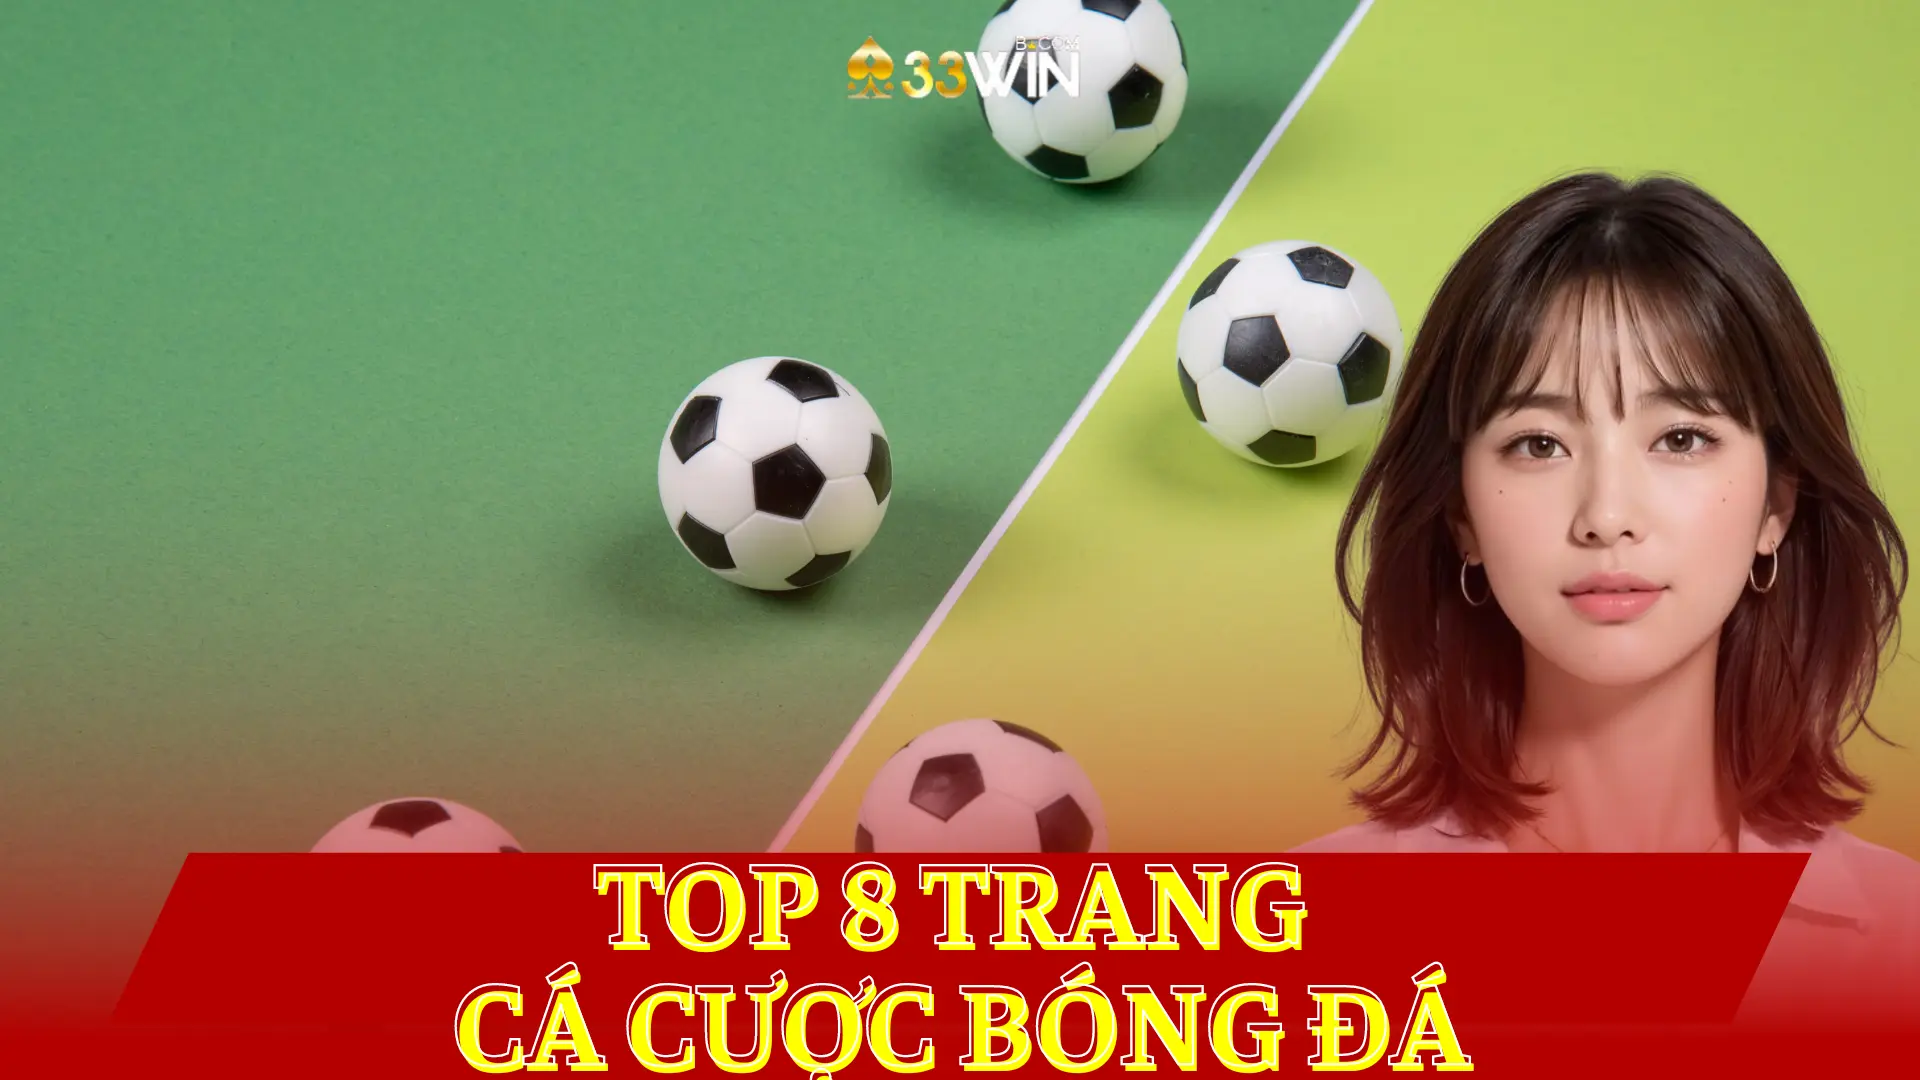 Top-8-Trang-Ca-Cuoc-Bong-Da